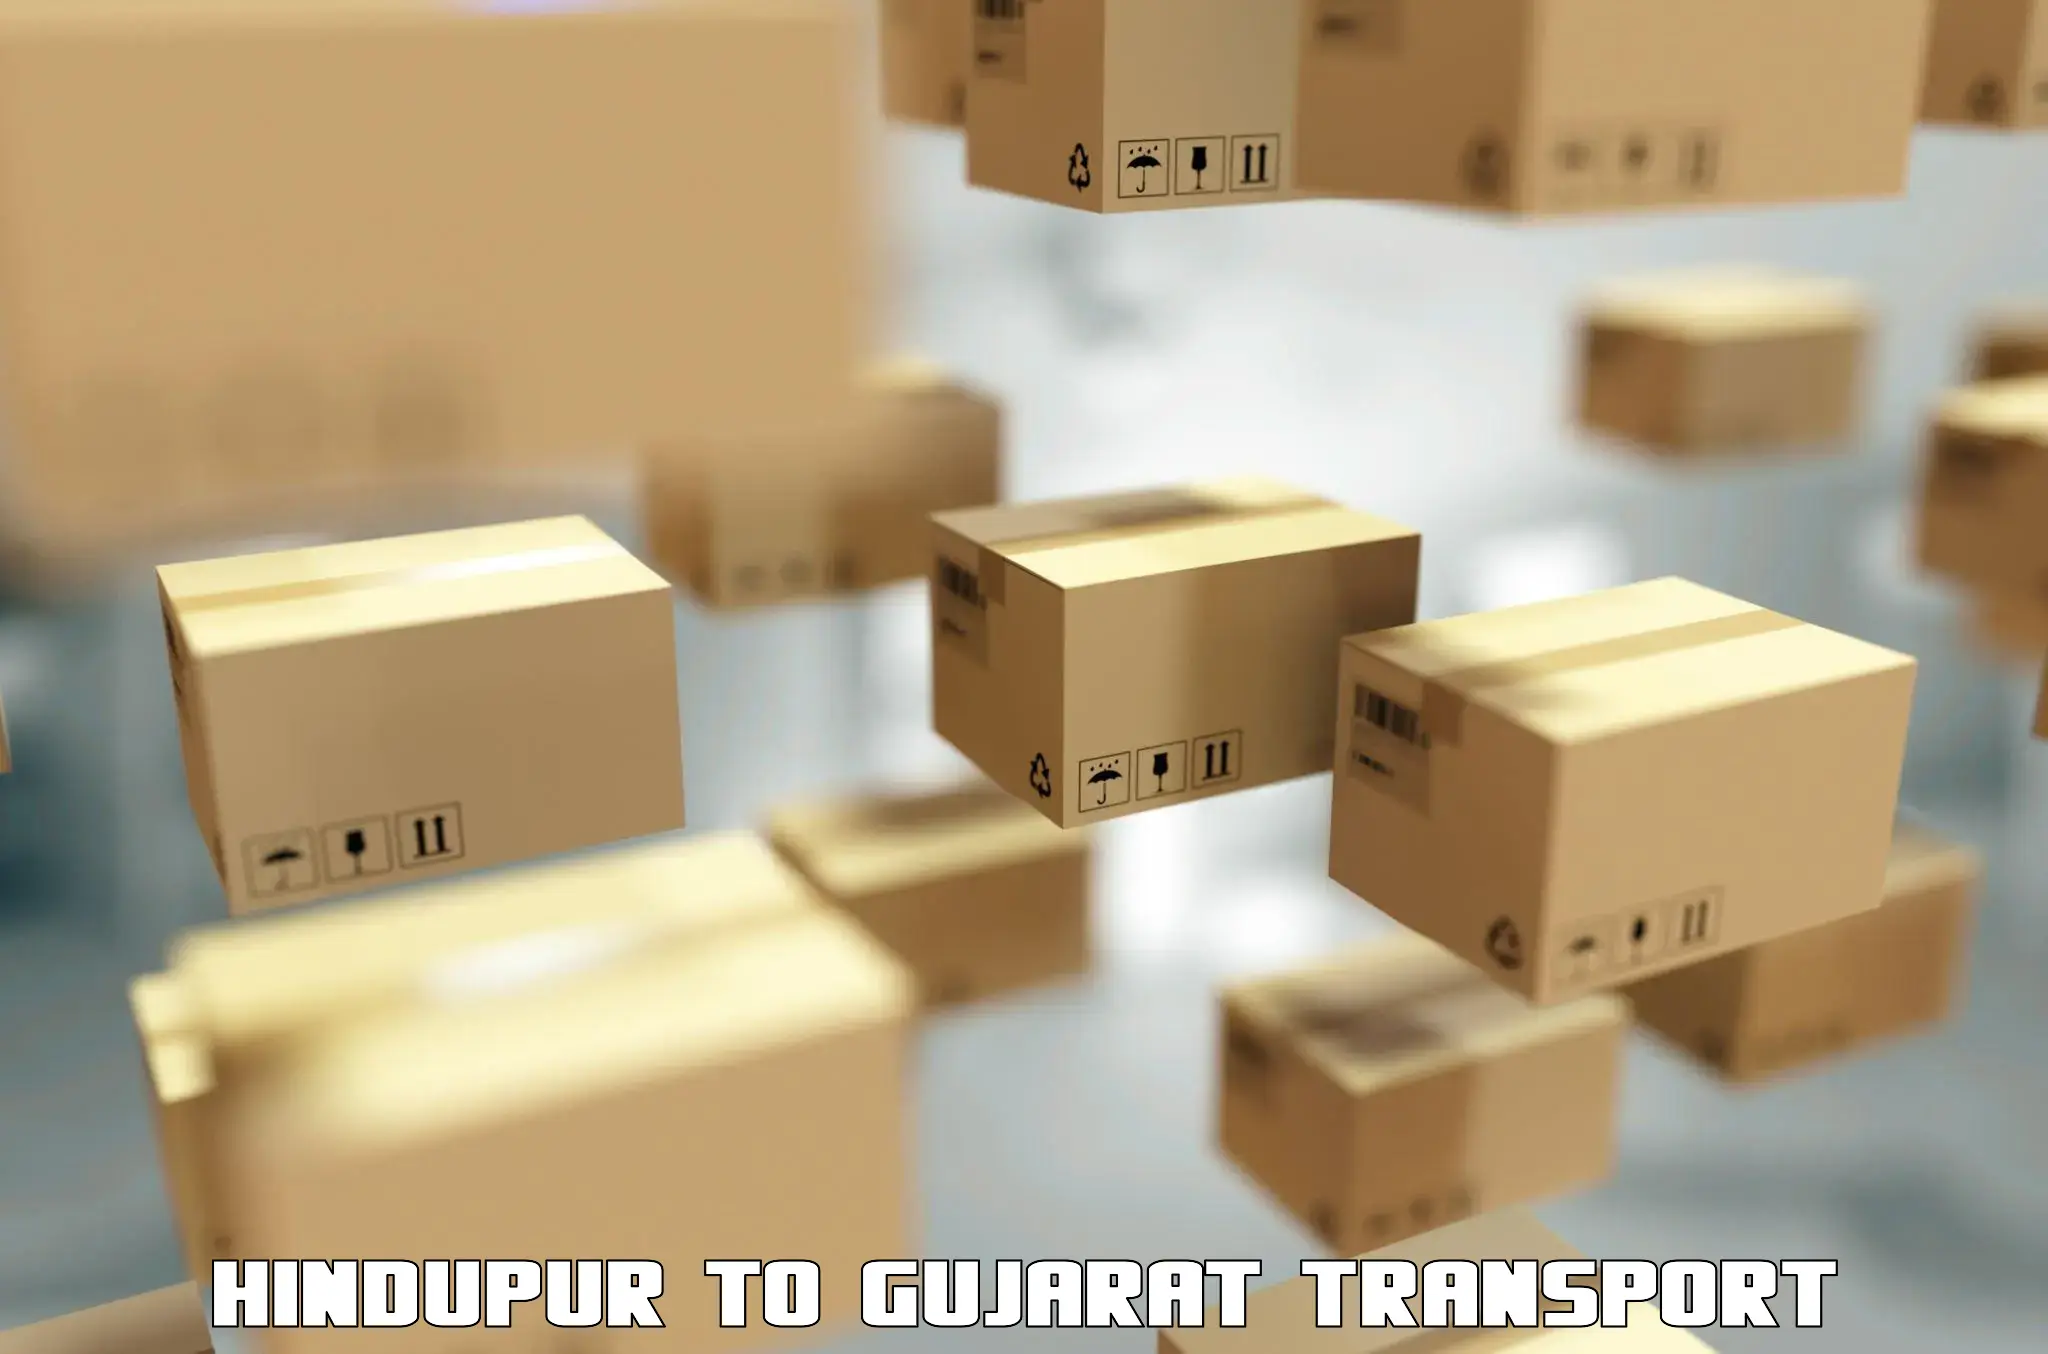 Express transport services Hindupur to Gujarat